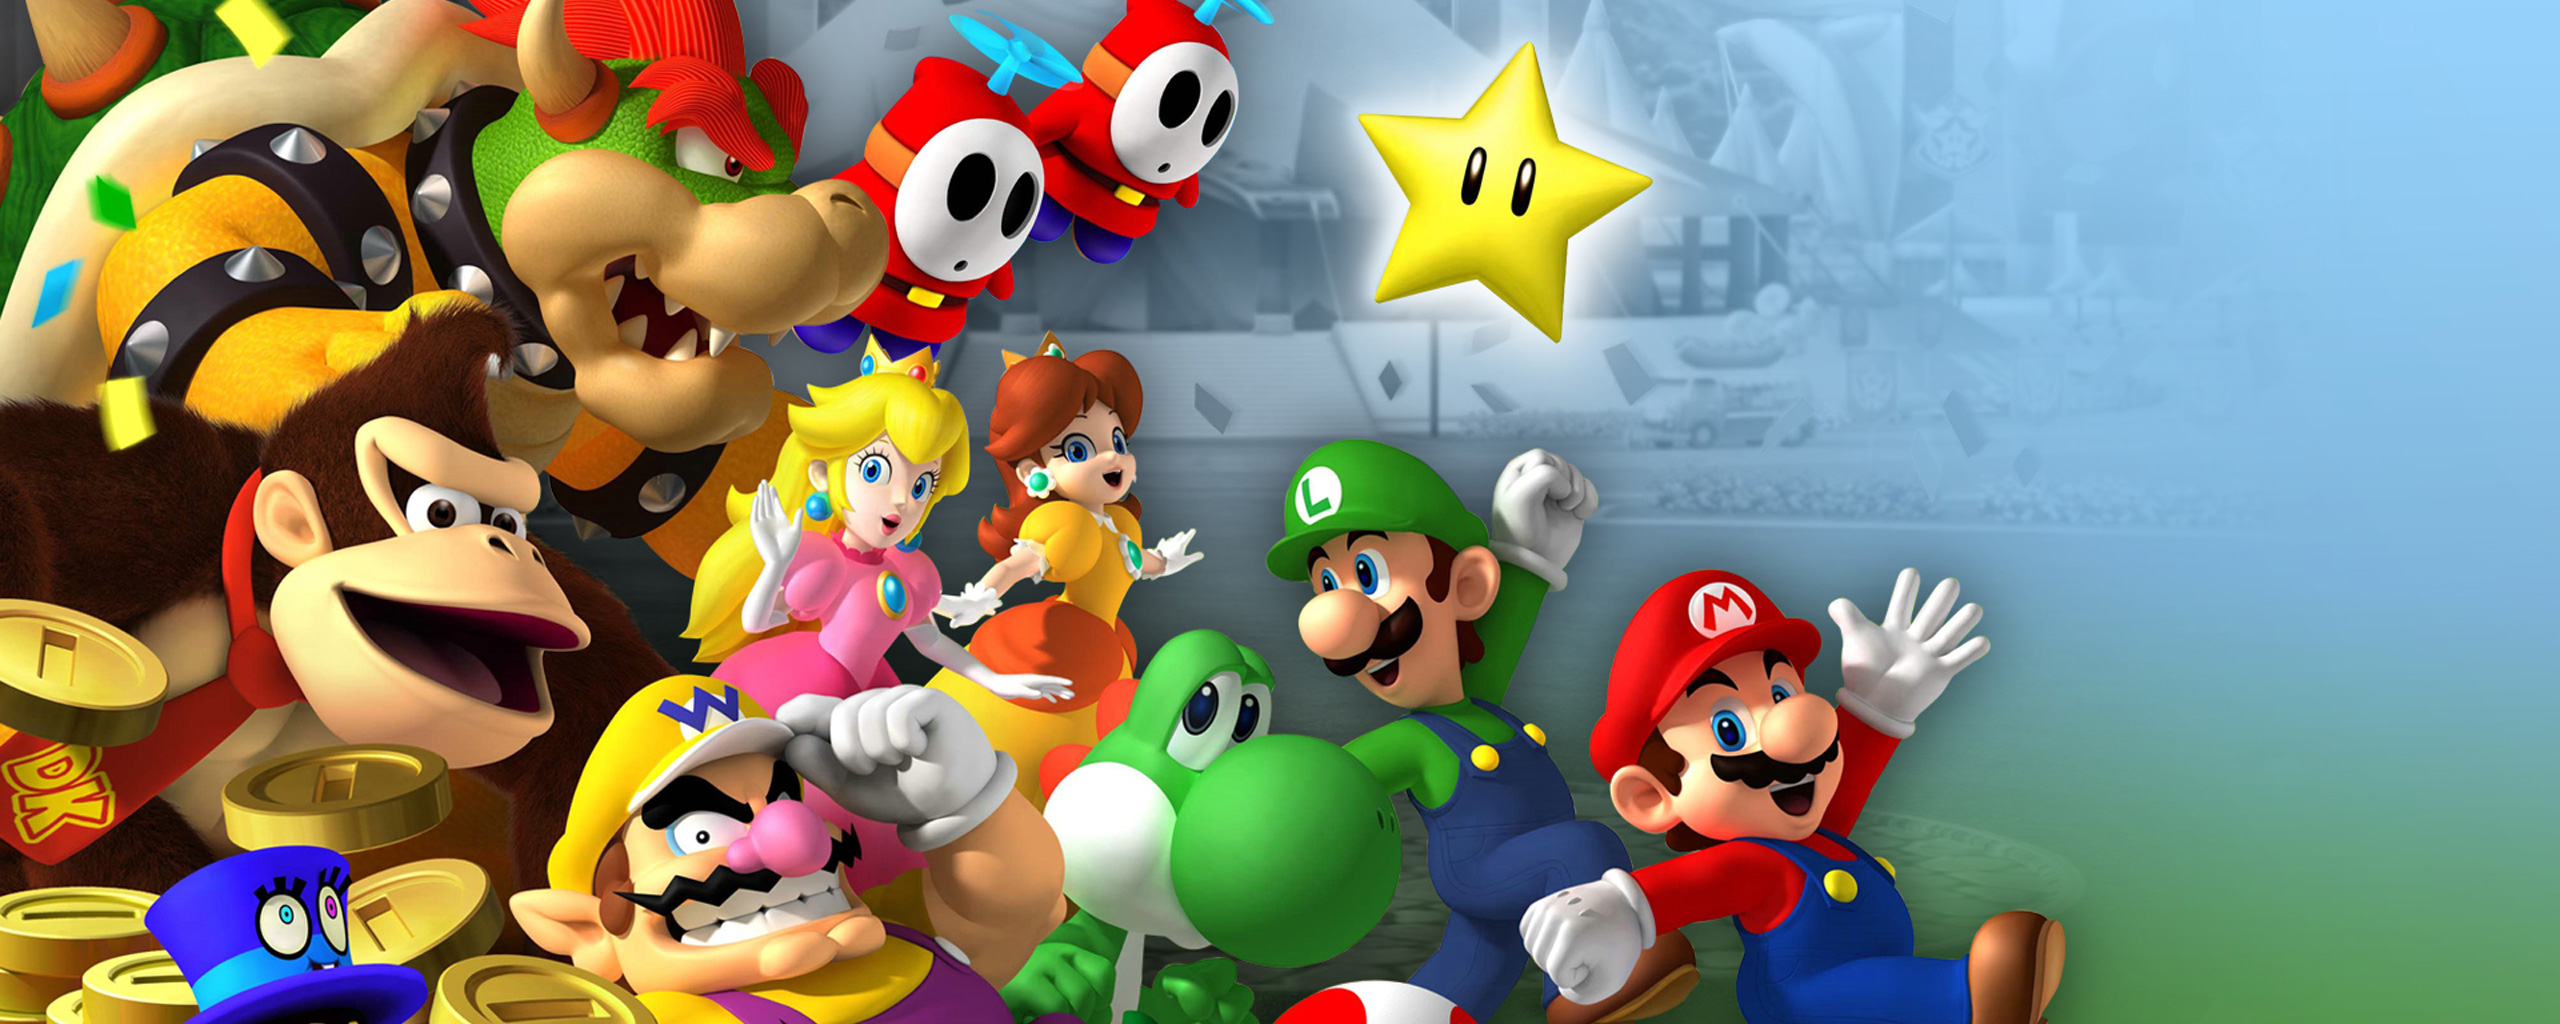 Los mejores fondos de pantalla de Mario Party 8 para la pantalla del teléfono